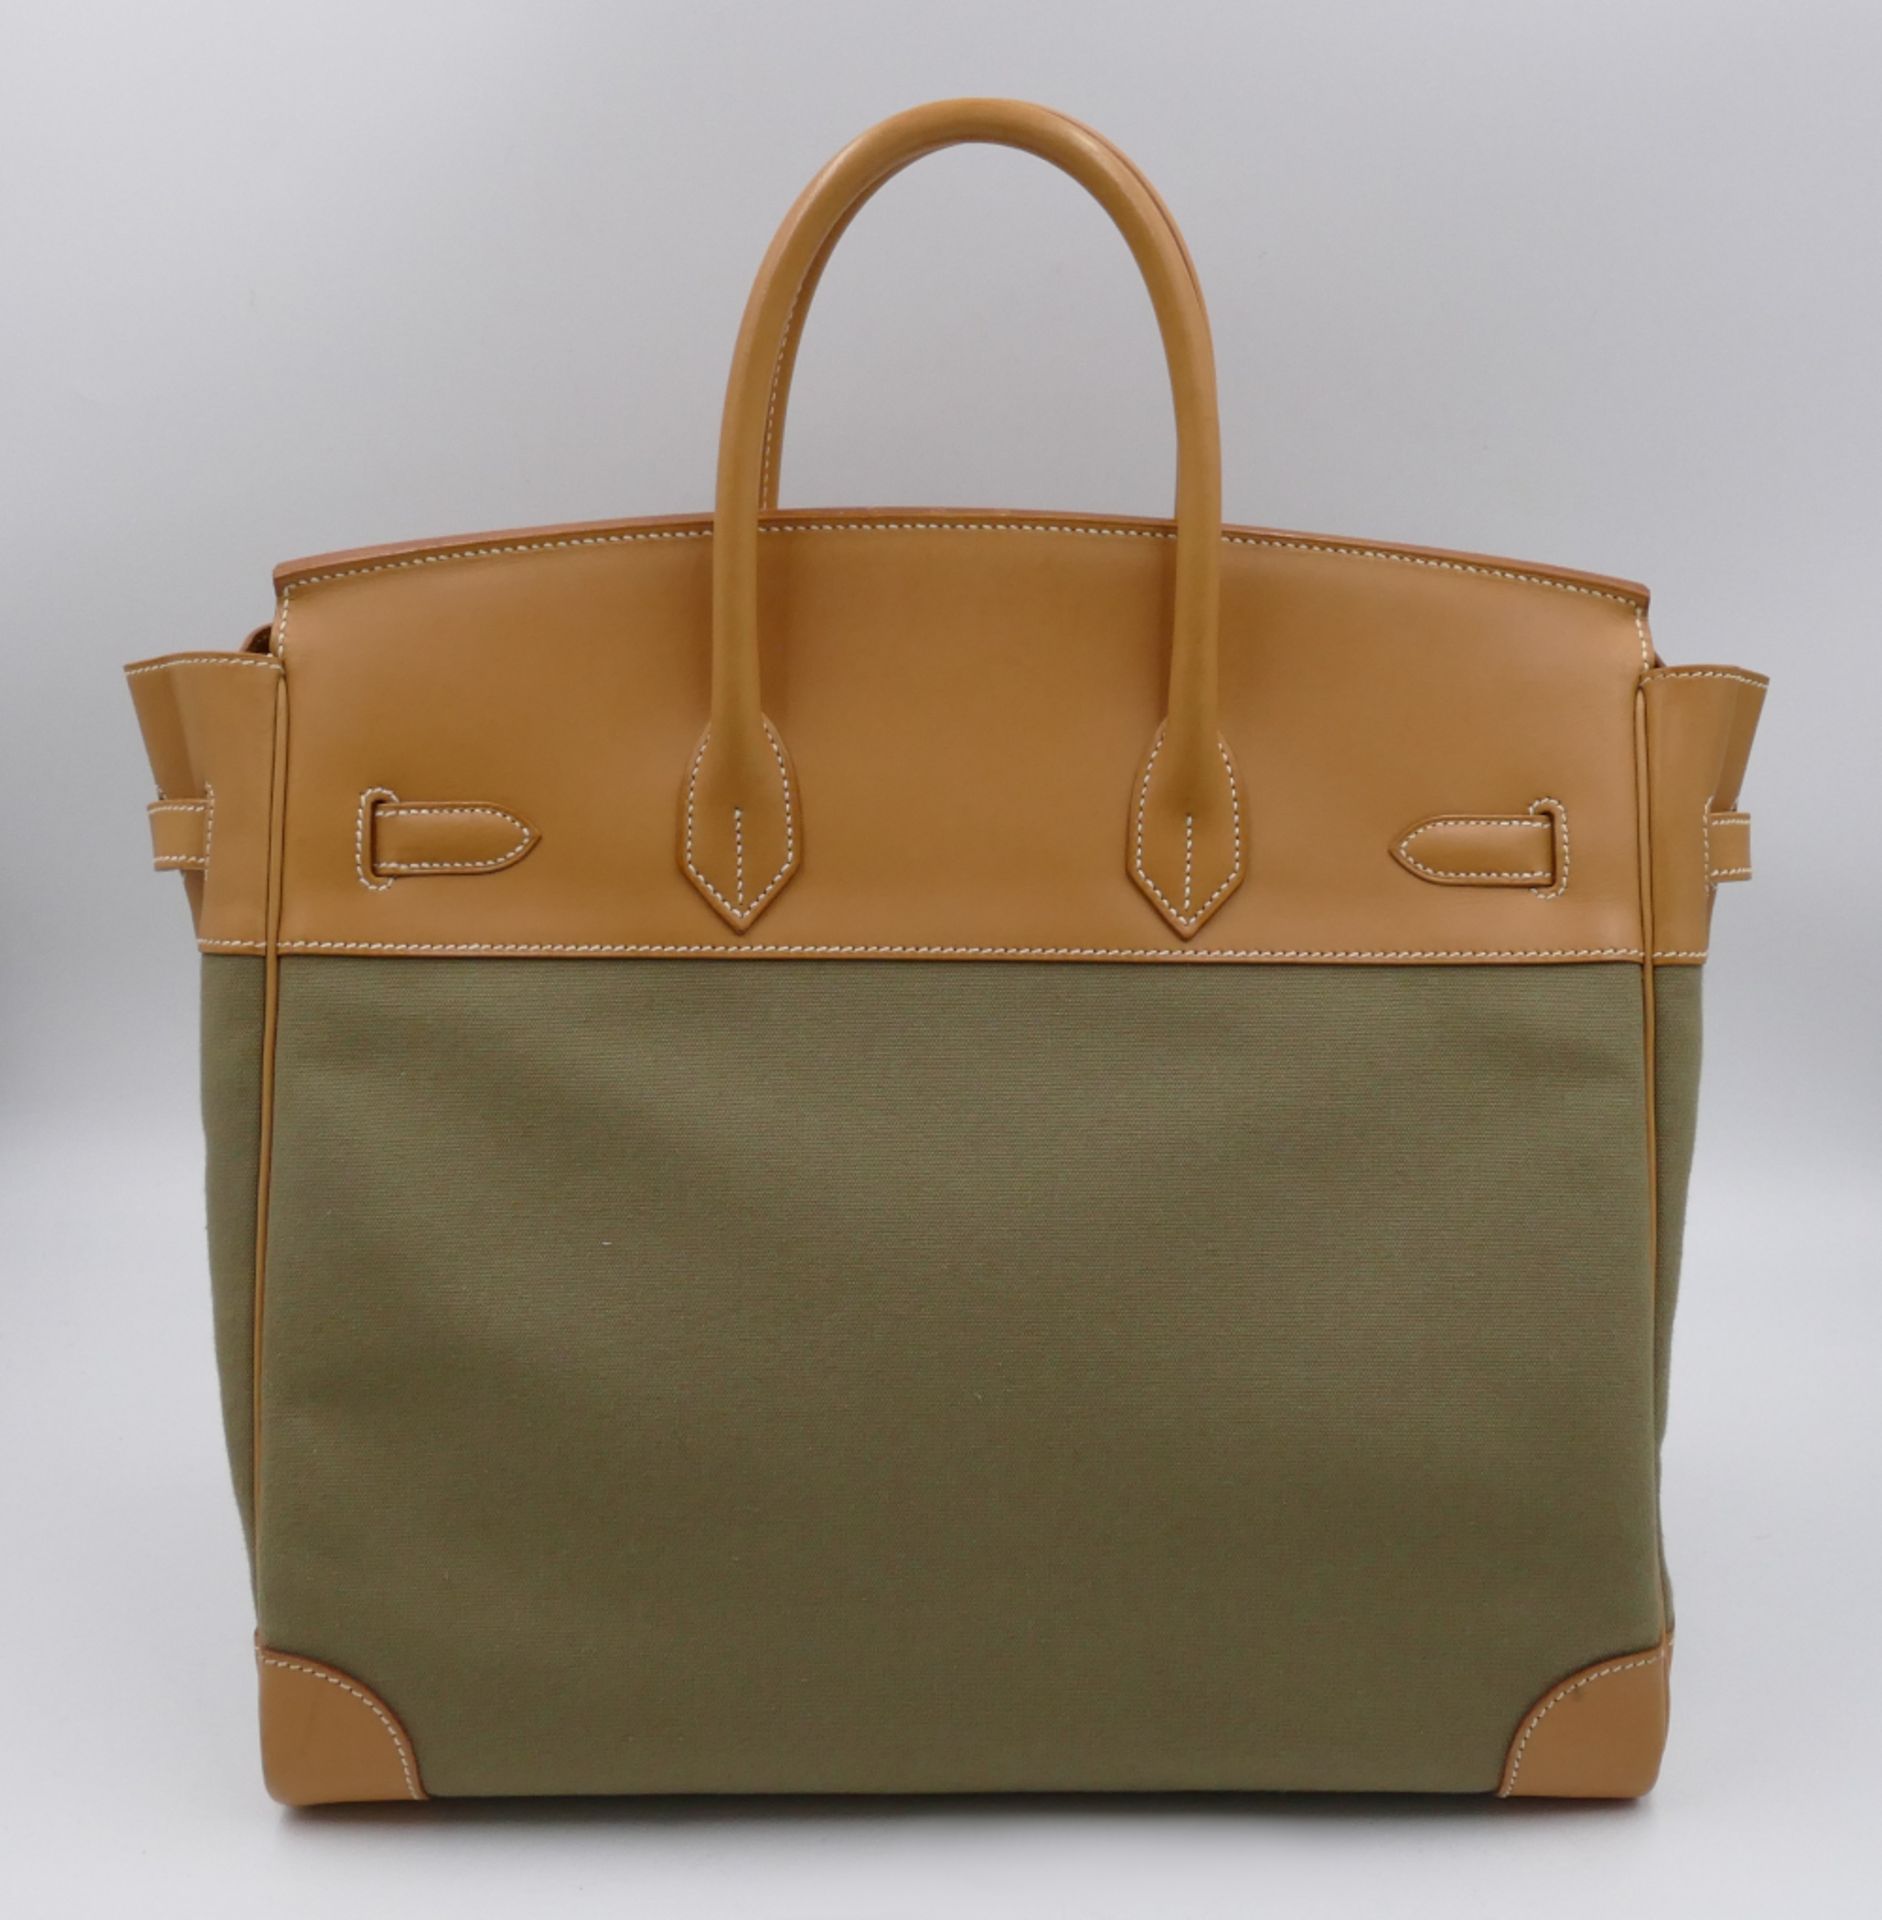 1 Handtasche HERMÈS Birkin 35, blassgrünes Textil mit hellem Leder, innen gelbes Ziegenleder, Schlüs - Image 2 of 7